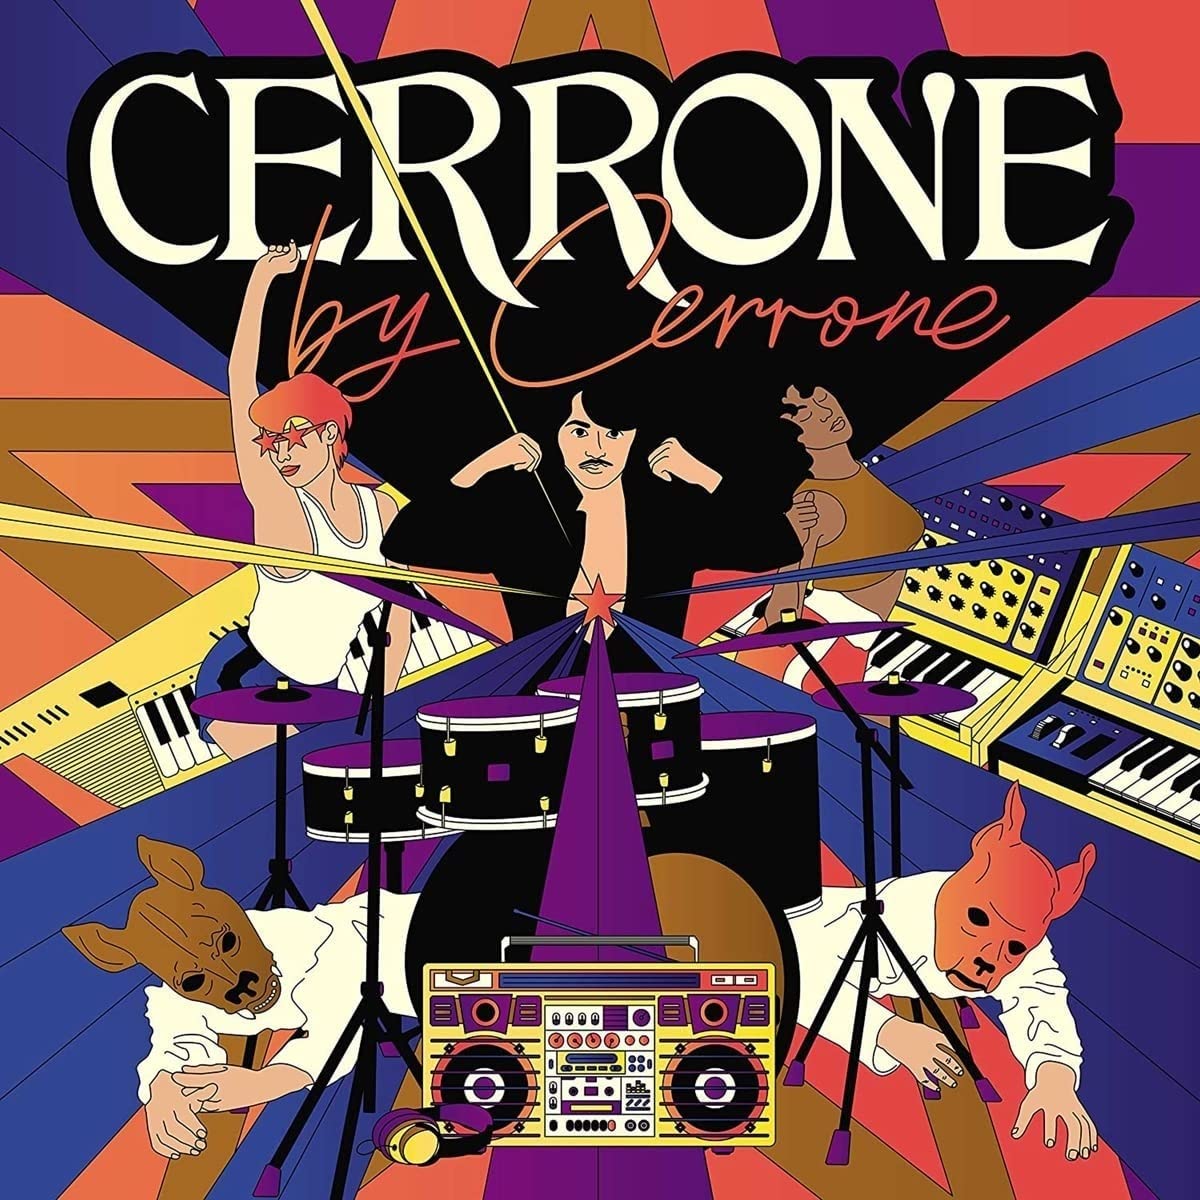 Cerrone Cerrone By Cerrone